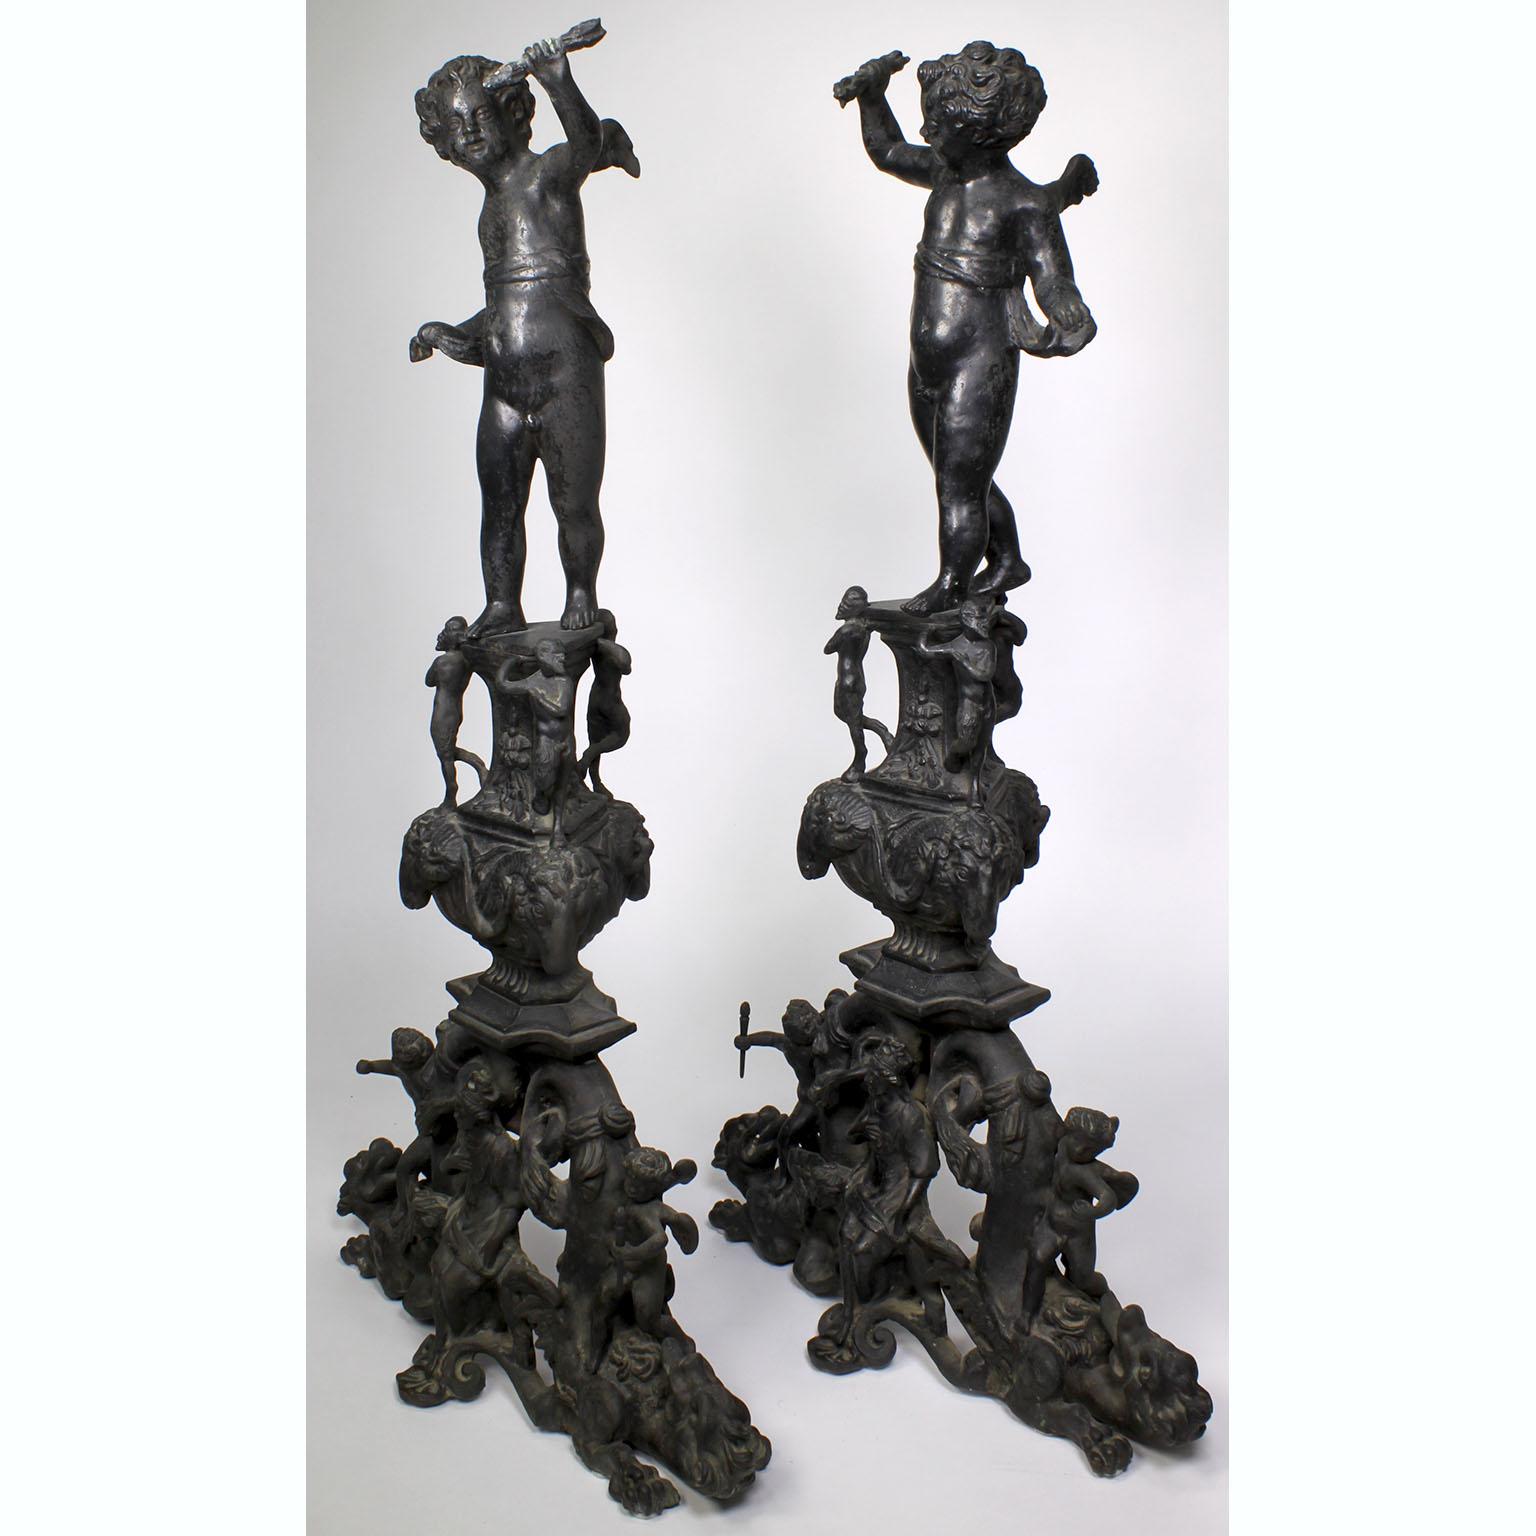 Paire de chenets (andirons) français de style baroque, datant du 19e-20e siècle, en bronze patiné. Chaque chenet est surmonté d'un chérubin debout sur un support flanqué de styrs et de têtes de chèvres royales, au-dessus d'une plinthe à volutes